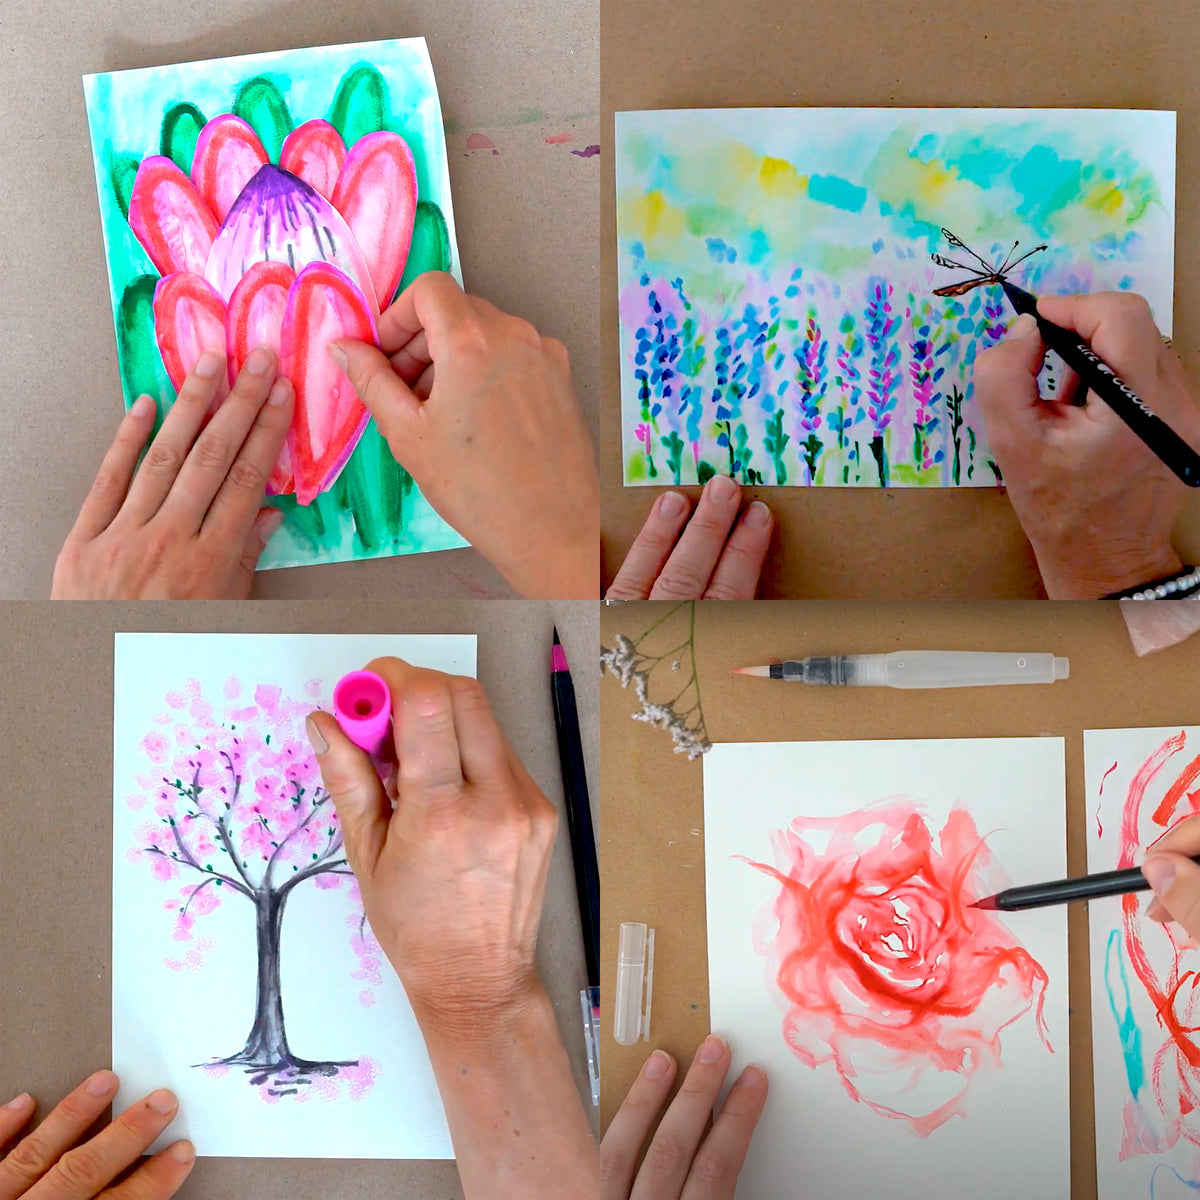 The Flower Project complete workshop bundle - all 4 workshop videos